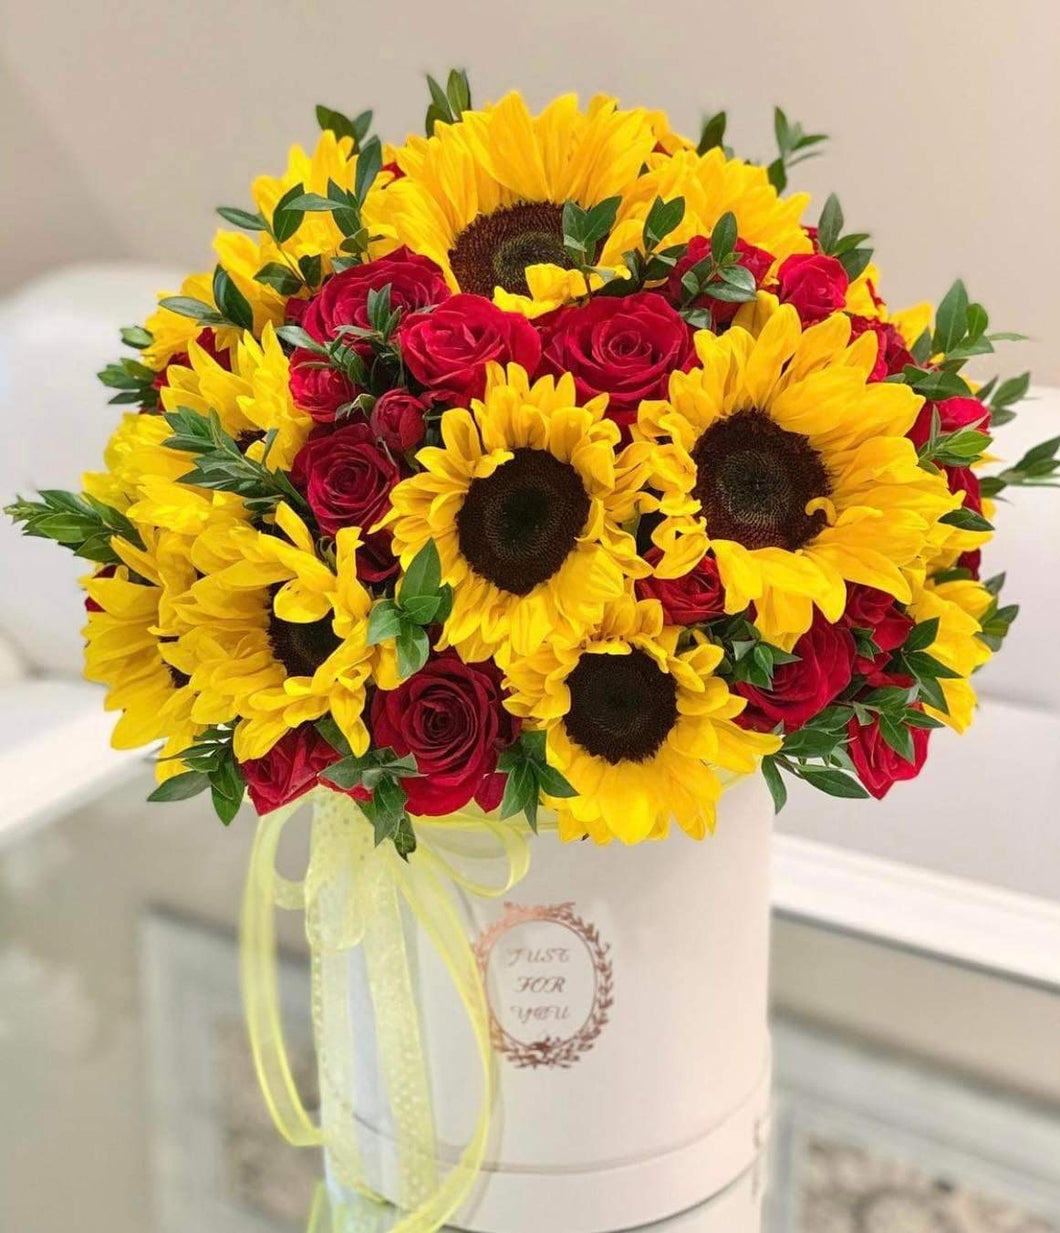 Sunflowers /rose una a box